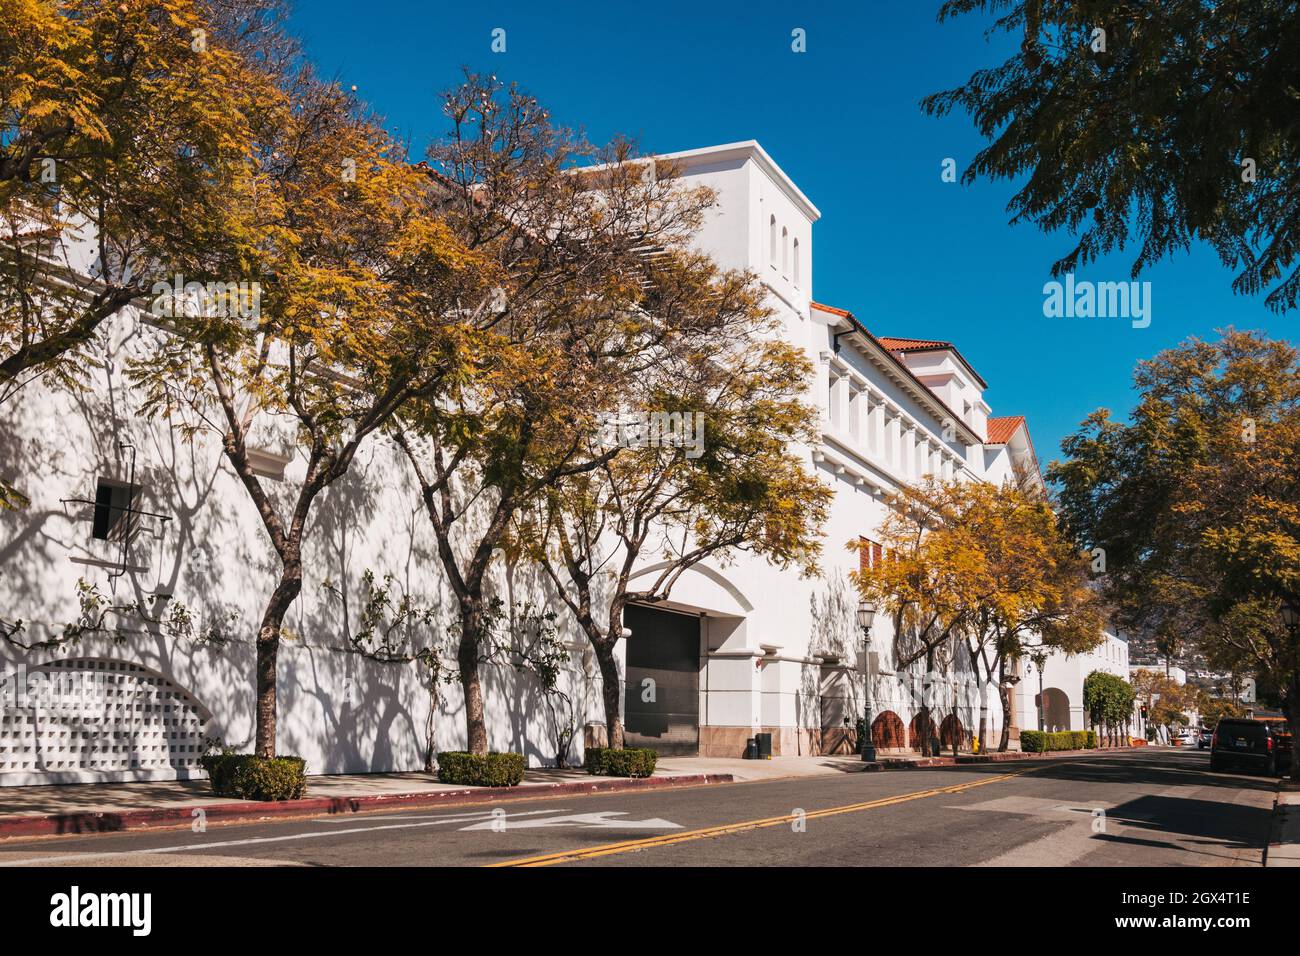 L'arrière du centre commercial Paseo Nuevo à Santa Barbara, en Californie.Conçu dans un style architectural colonial espagnol Banque D'Images